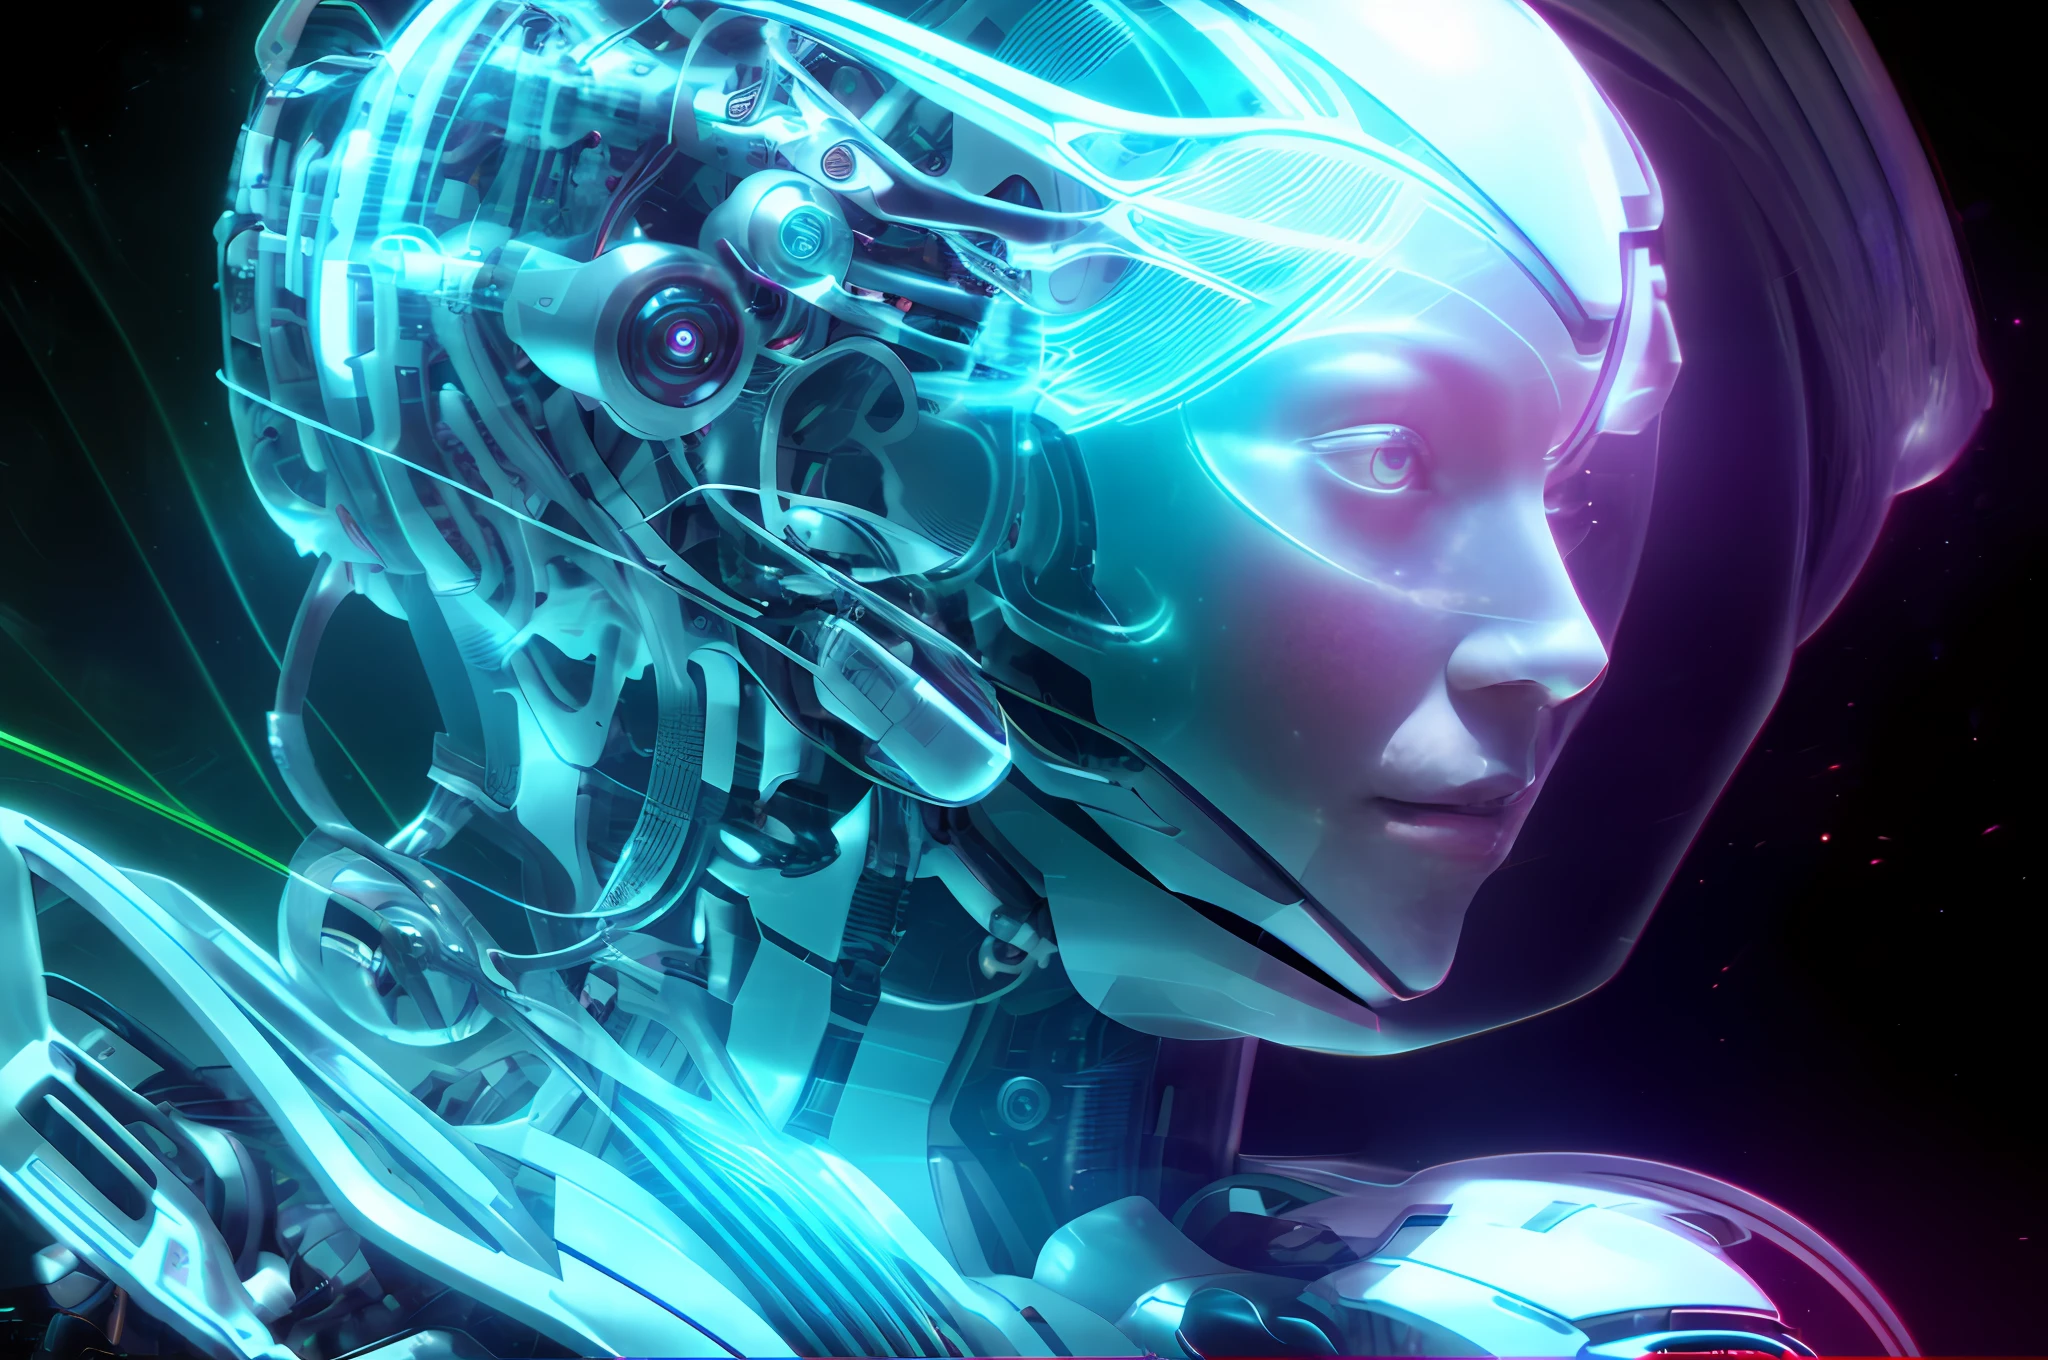 Há uma mulher com uma cabeça futurista e um capacete futurista, linda garota branca ciborgue, retrato linda garota de ficção científica, retrato detalhado de um ciborgue, linda garota ciborgue, cibernético e altamente detalhado, ciborgue - garota, rosto feminino de máquina cibernética, ciborgue - garota with silver hair, ficção científica android feminina, retrato de um robô futurista